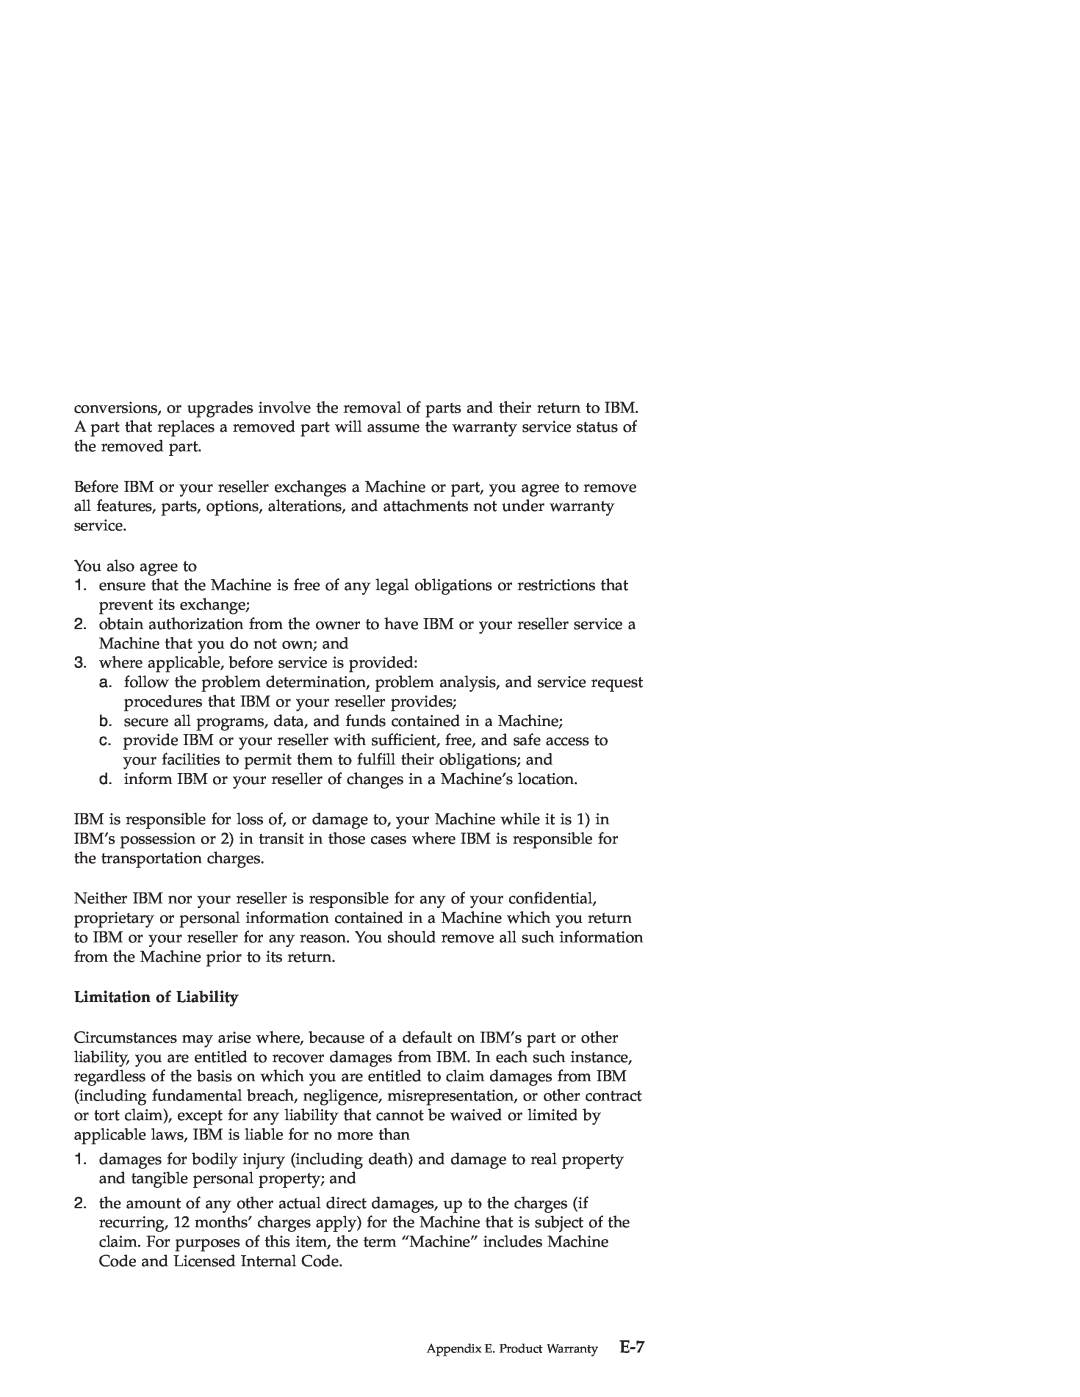 IBM ILC200, ILV200 manual Limitation of Liability 